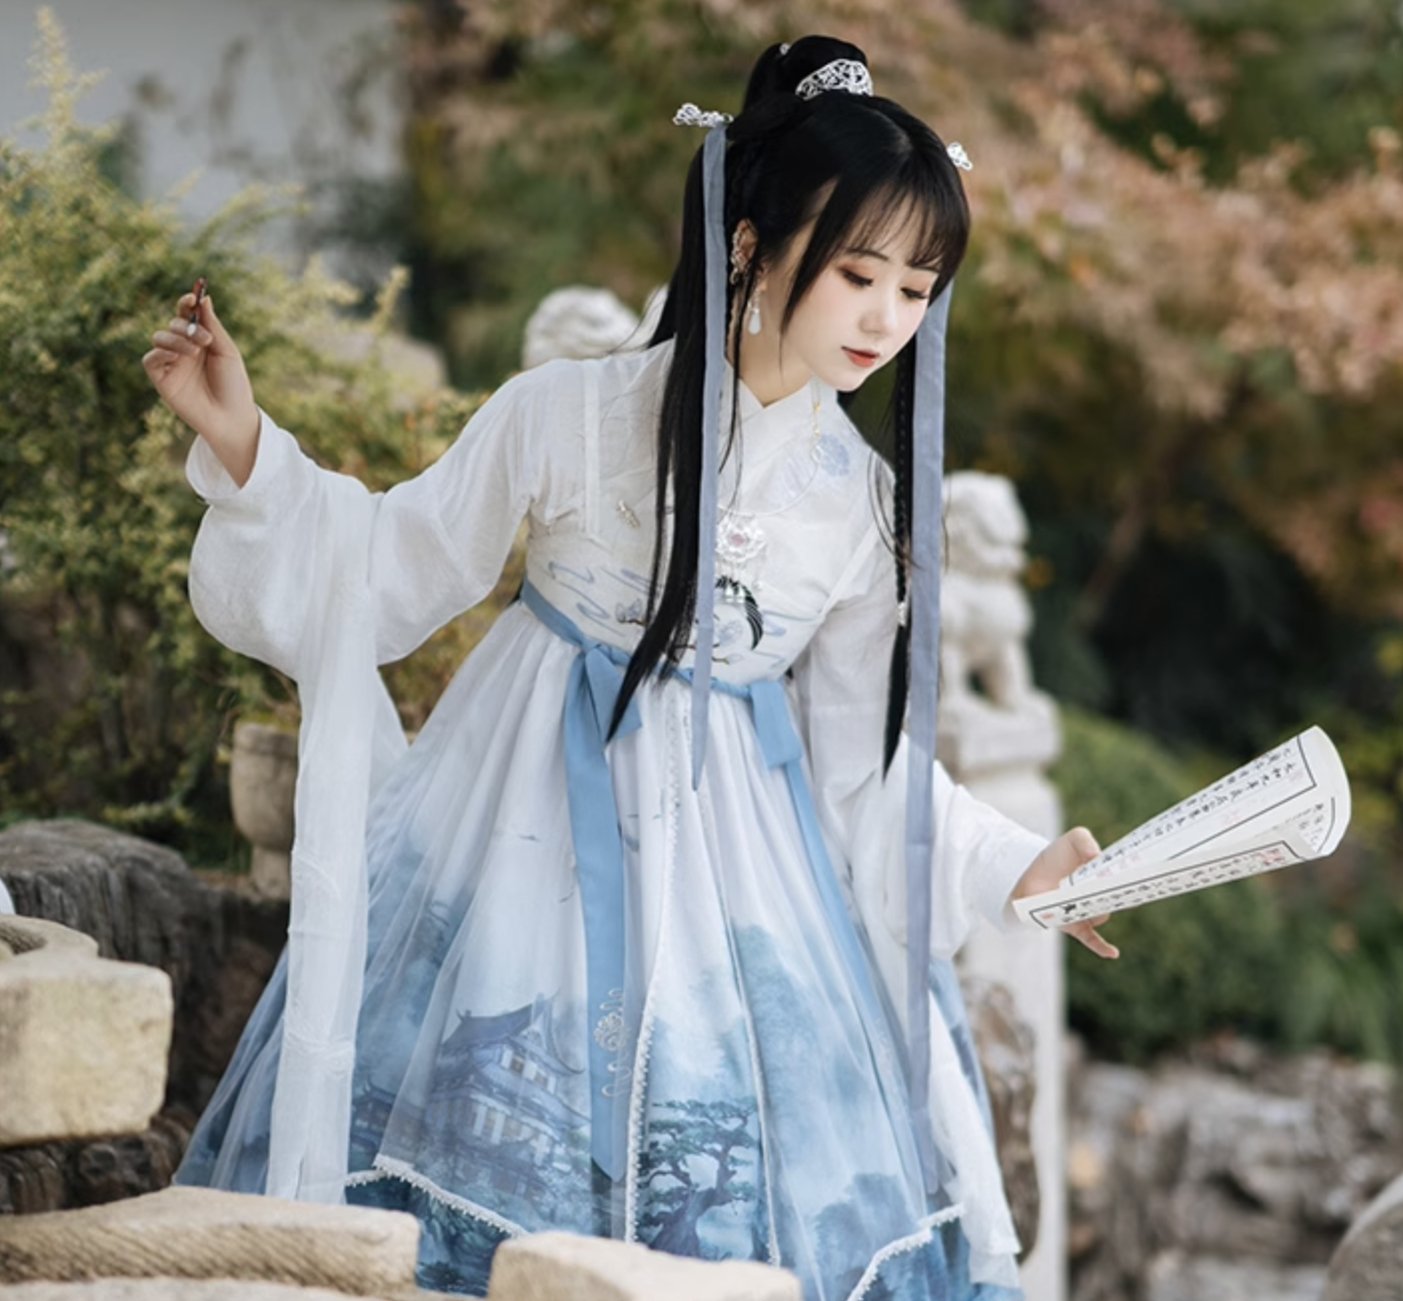 MDZS Lan Wangji Cosplay Costume For Girls 15106:321829